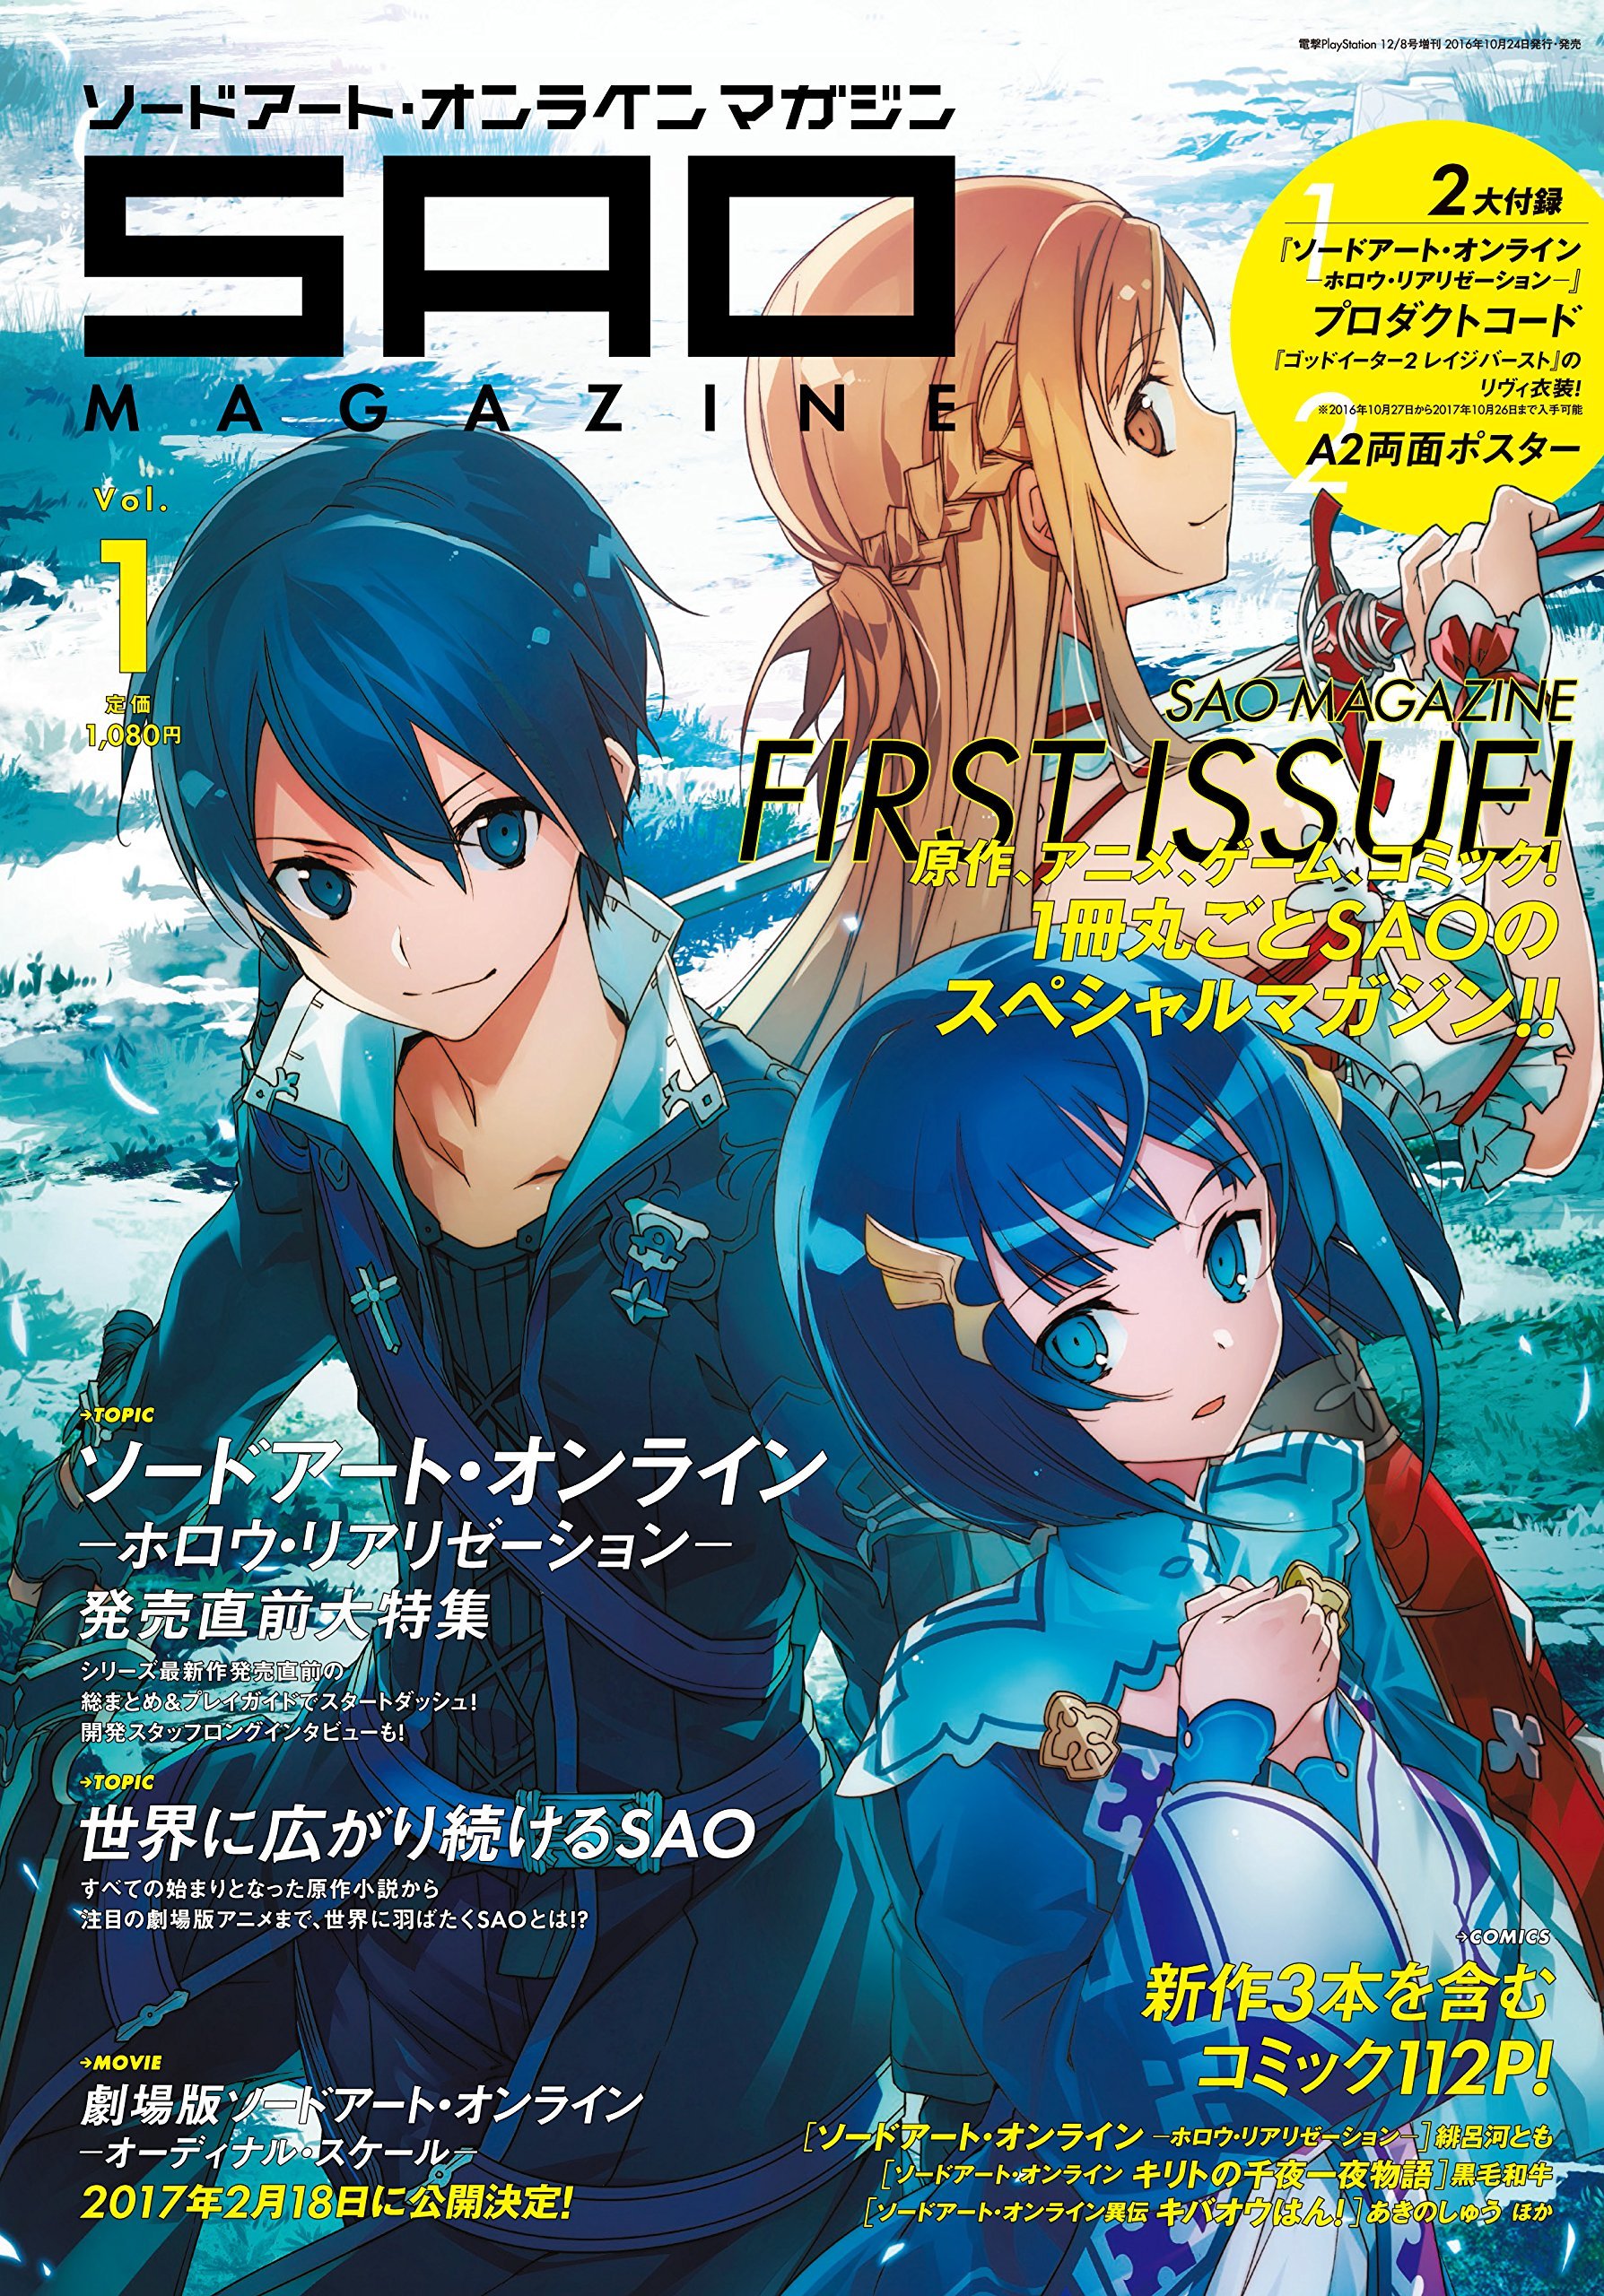 5 Best Anime like Sword Art Online - Japan Web Magazine